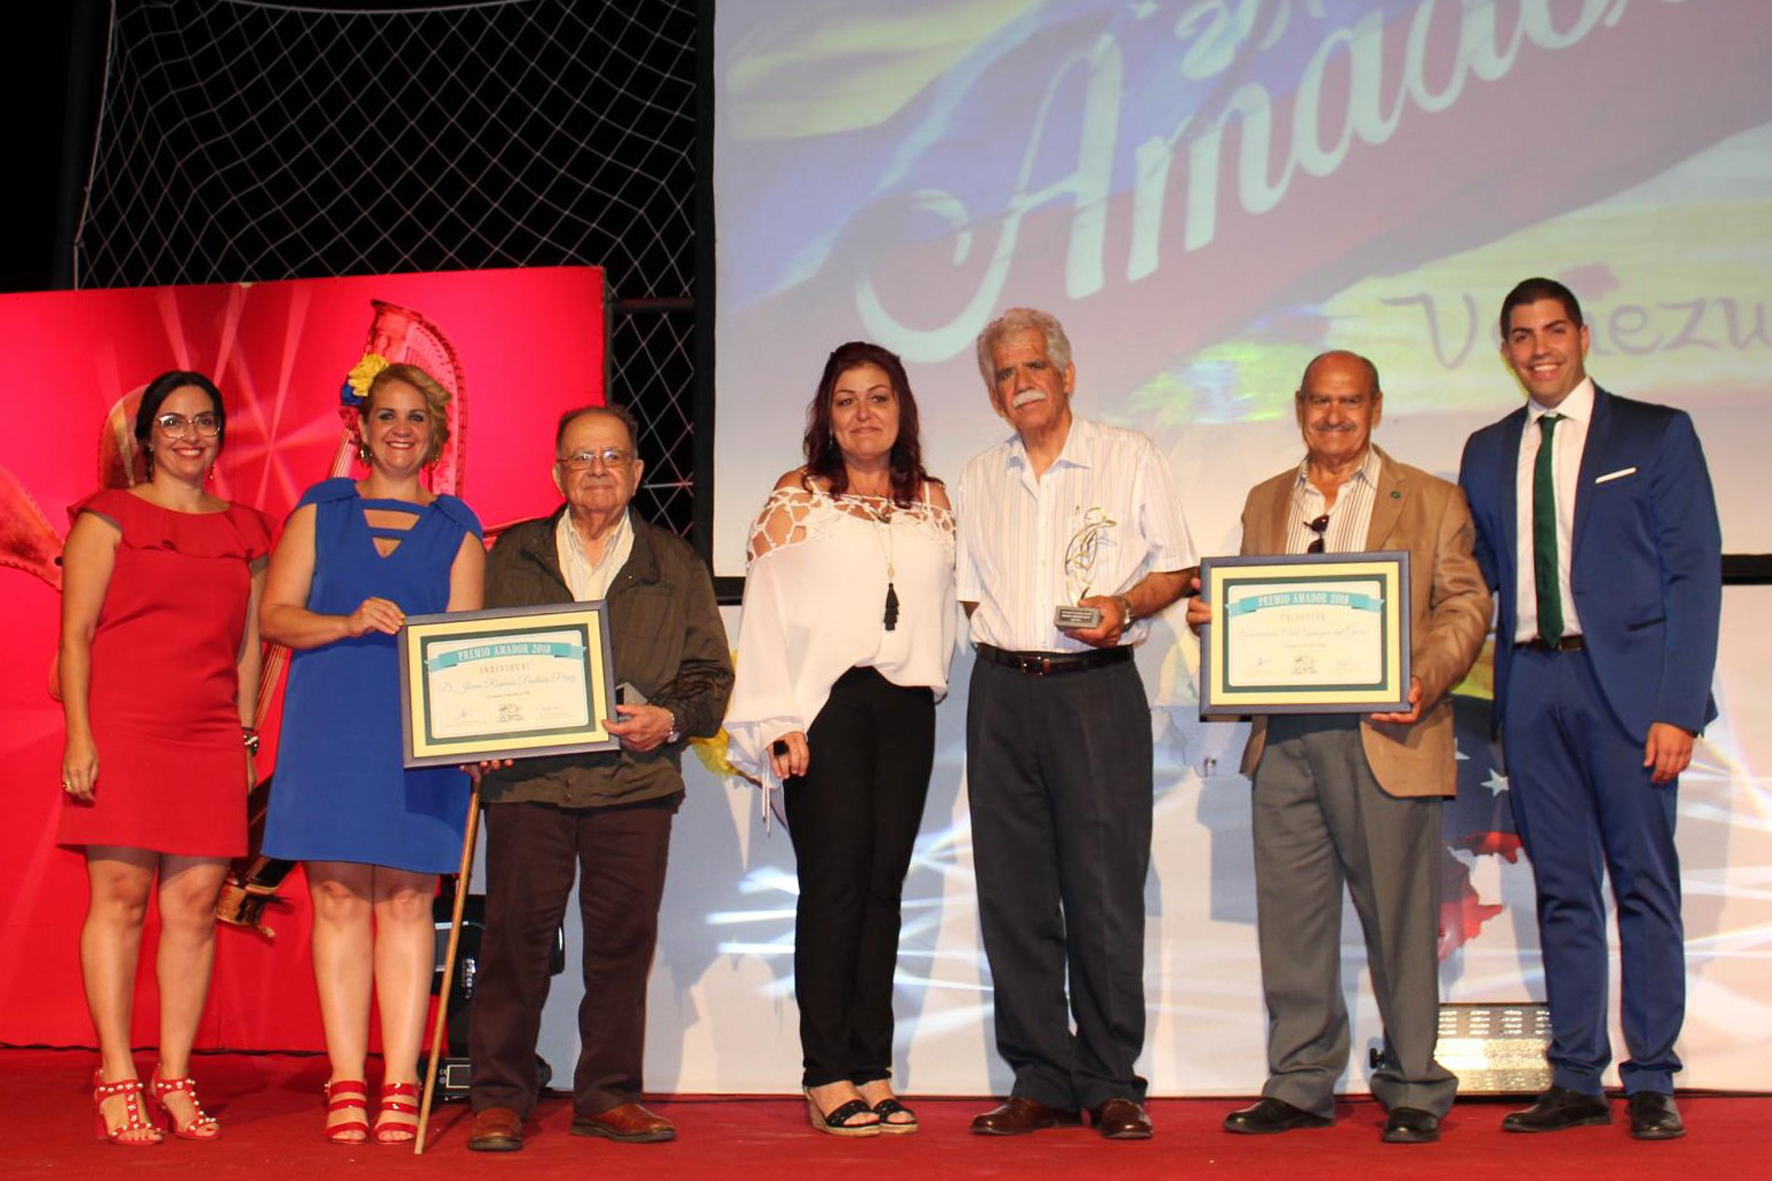 Juan Ramón Padrón y la Asociación Civil ”Amigos del Garoé” reciben los premios Amador 2018